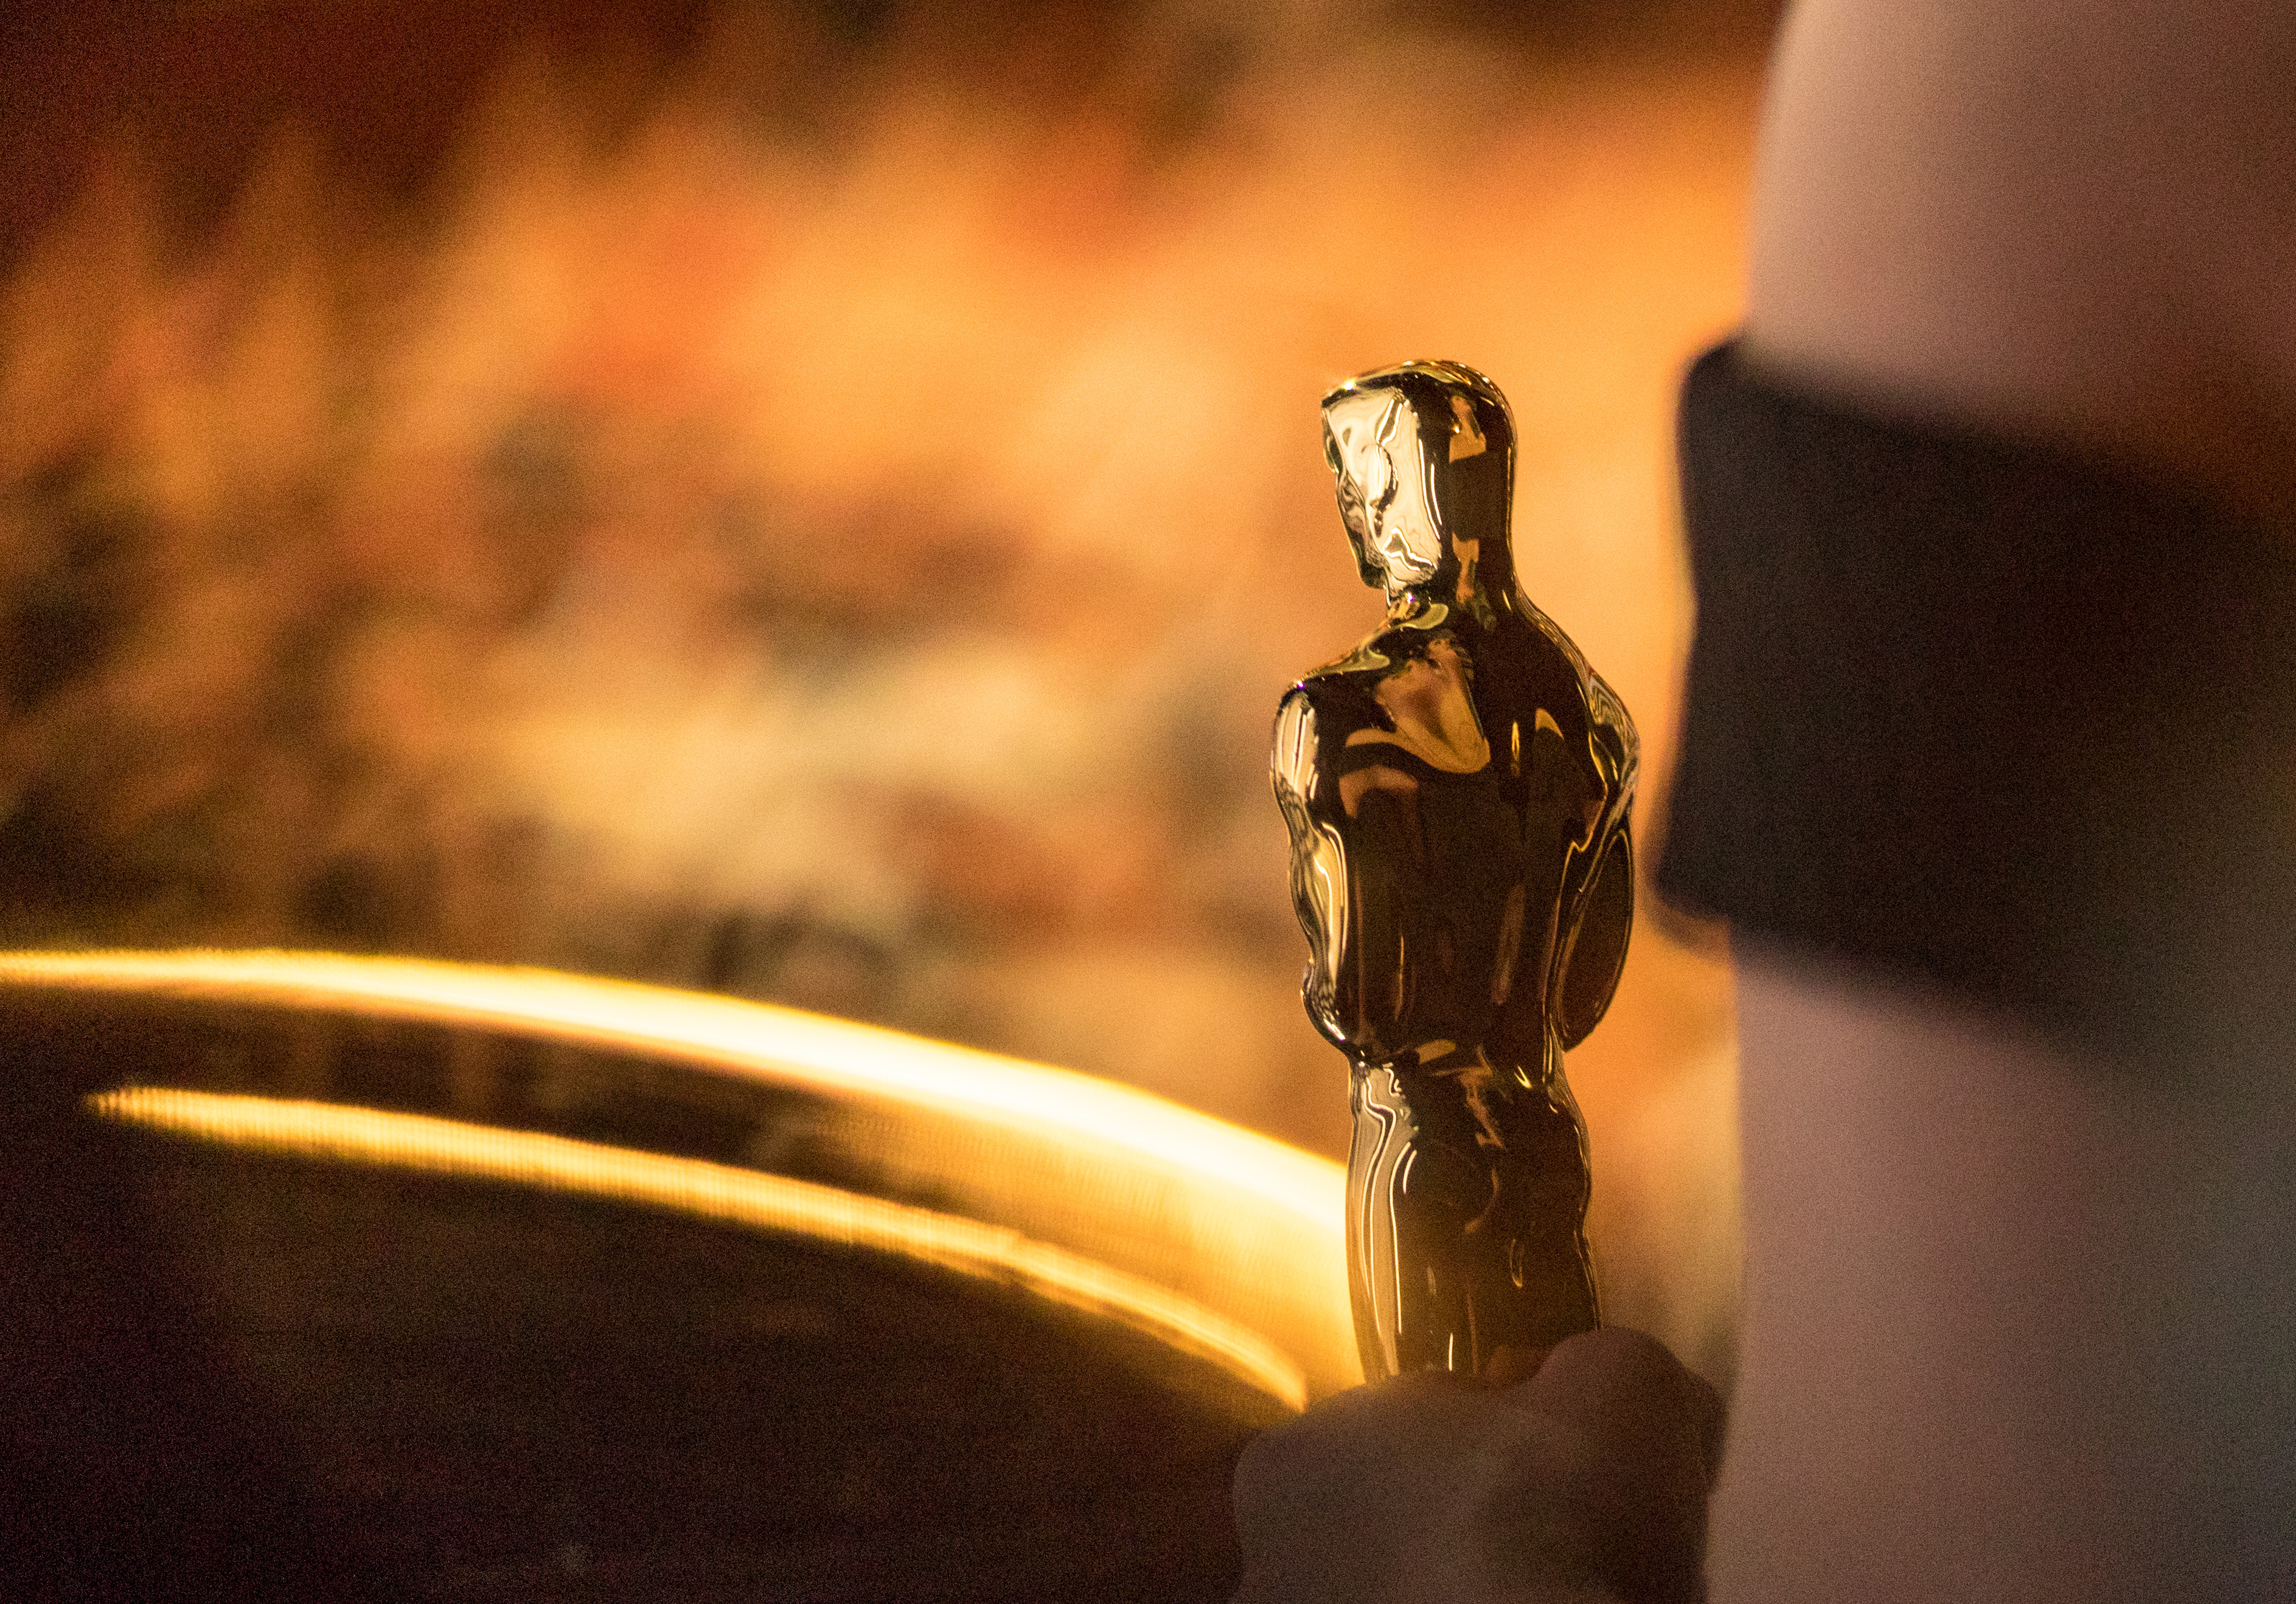 2016 година<br />
Всички 20 номинирани за награда Оскар в актьорските категории са бели. Това предизвиква критики и определя церемонията като „Белите Оскари“. В отговор Академията обявява план да увеличи броя на жените и представителите на малцинствата сред членовете си.